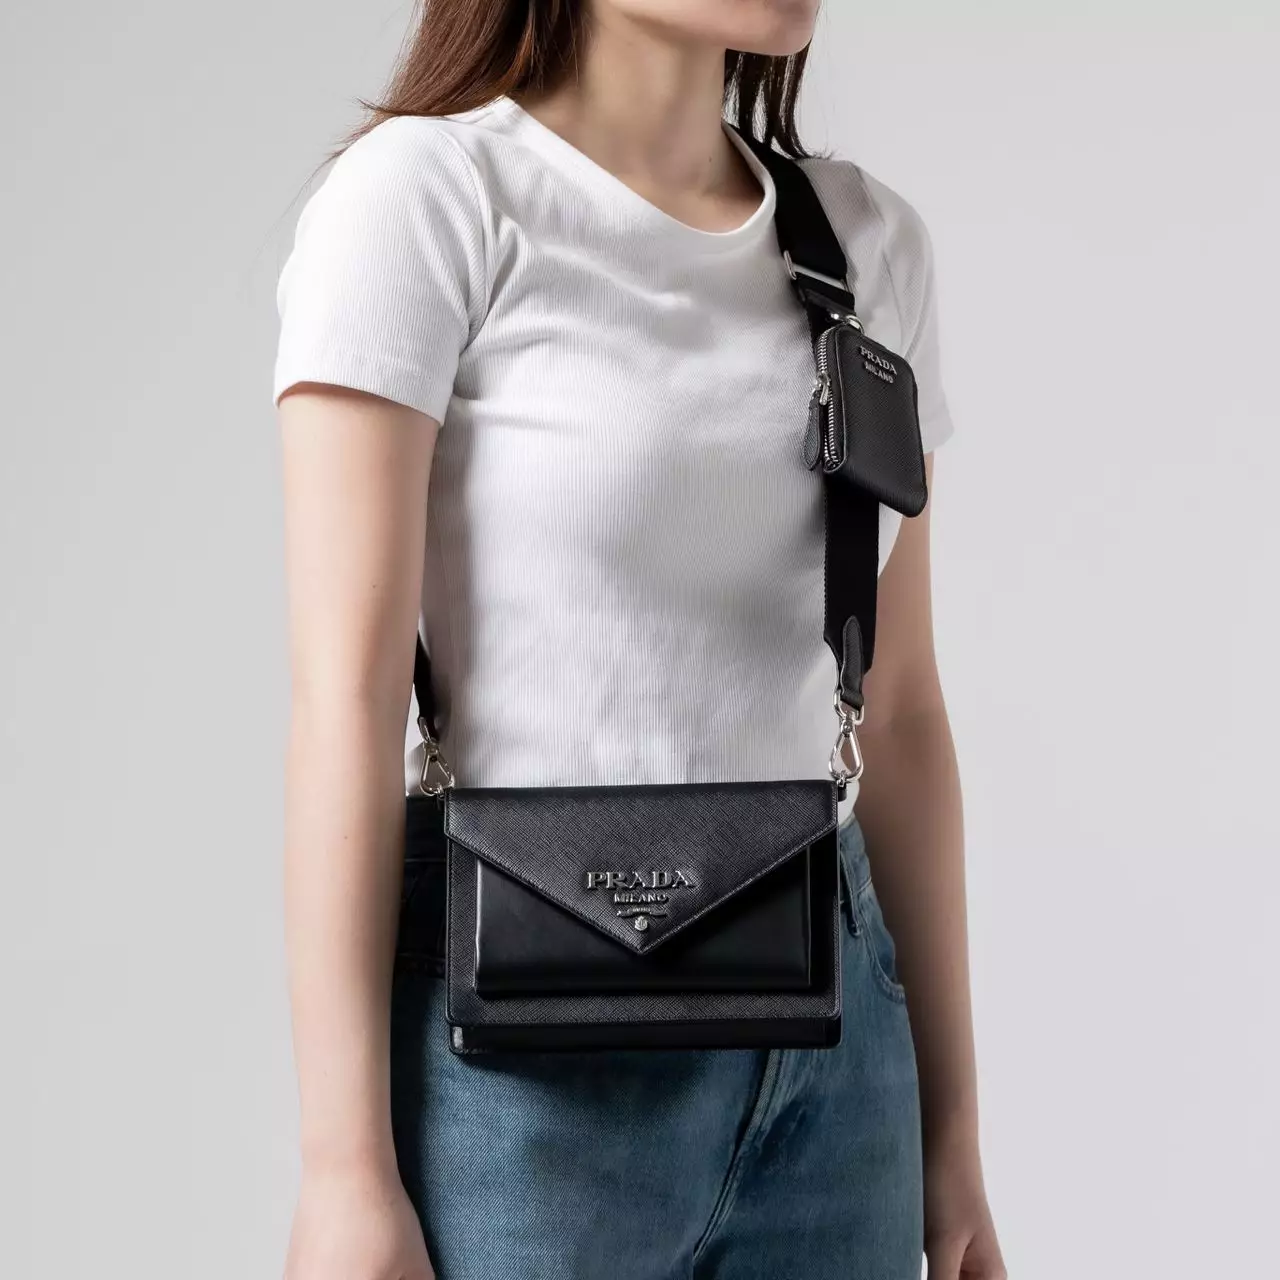 Prada Saffiano Leather Mini Envelope Bag In White